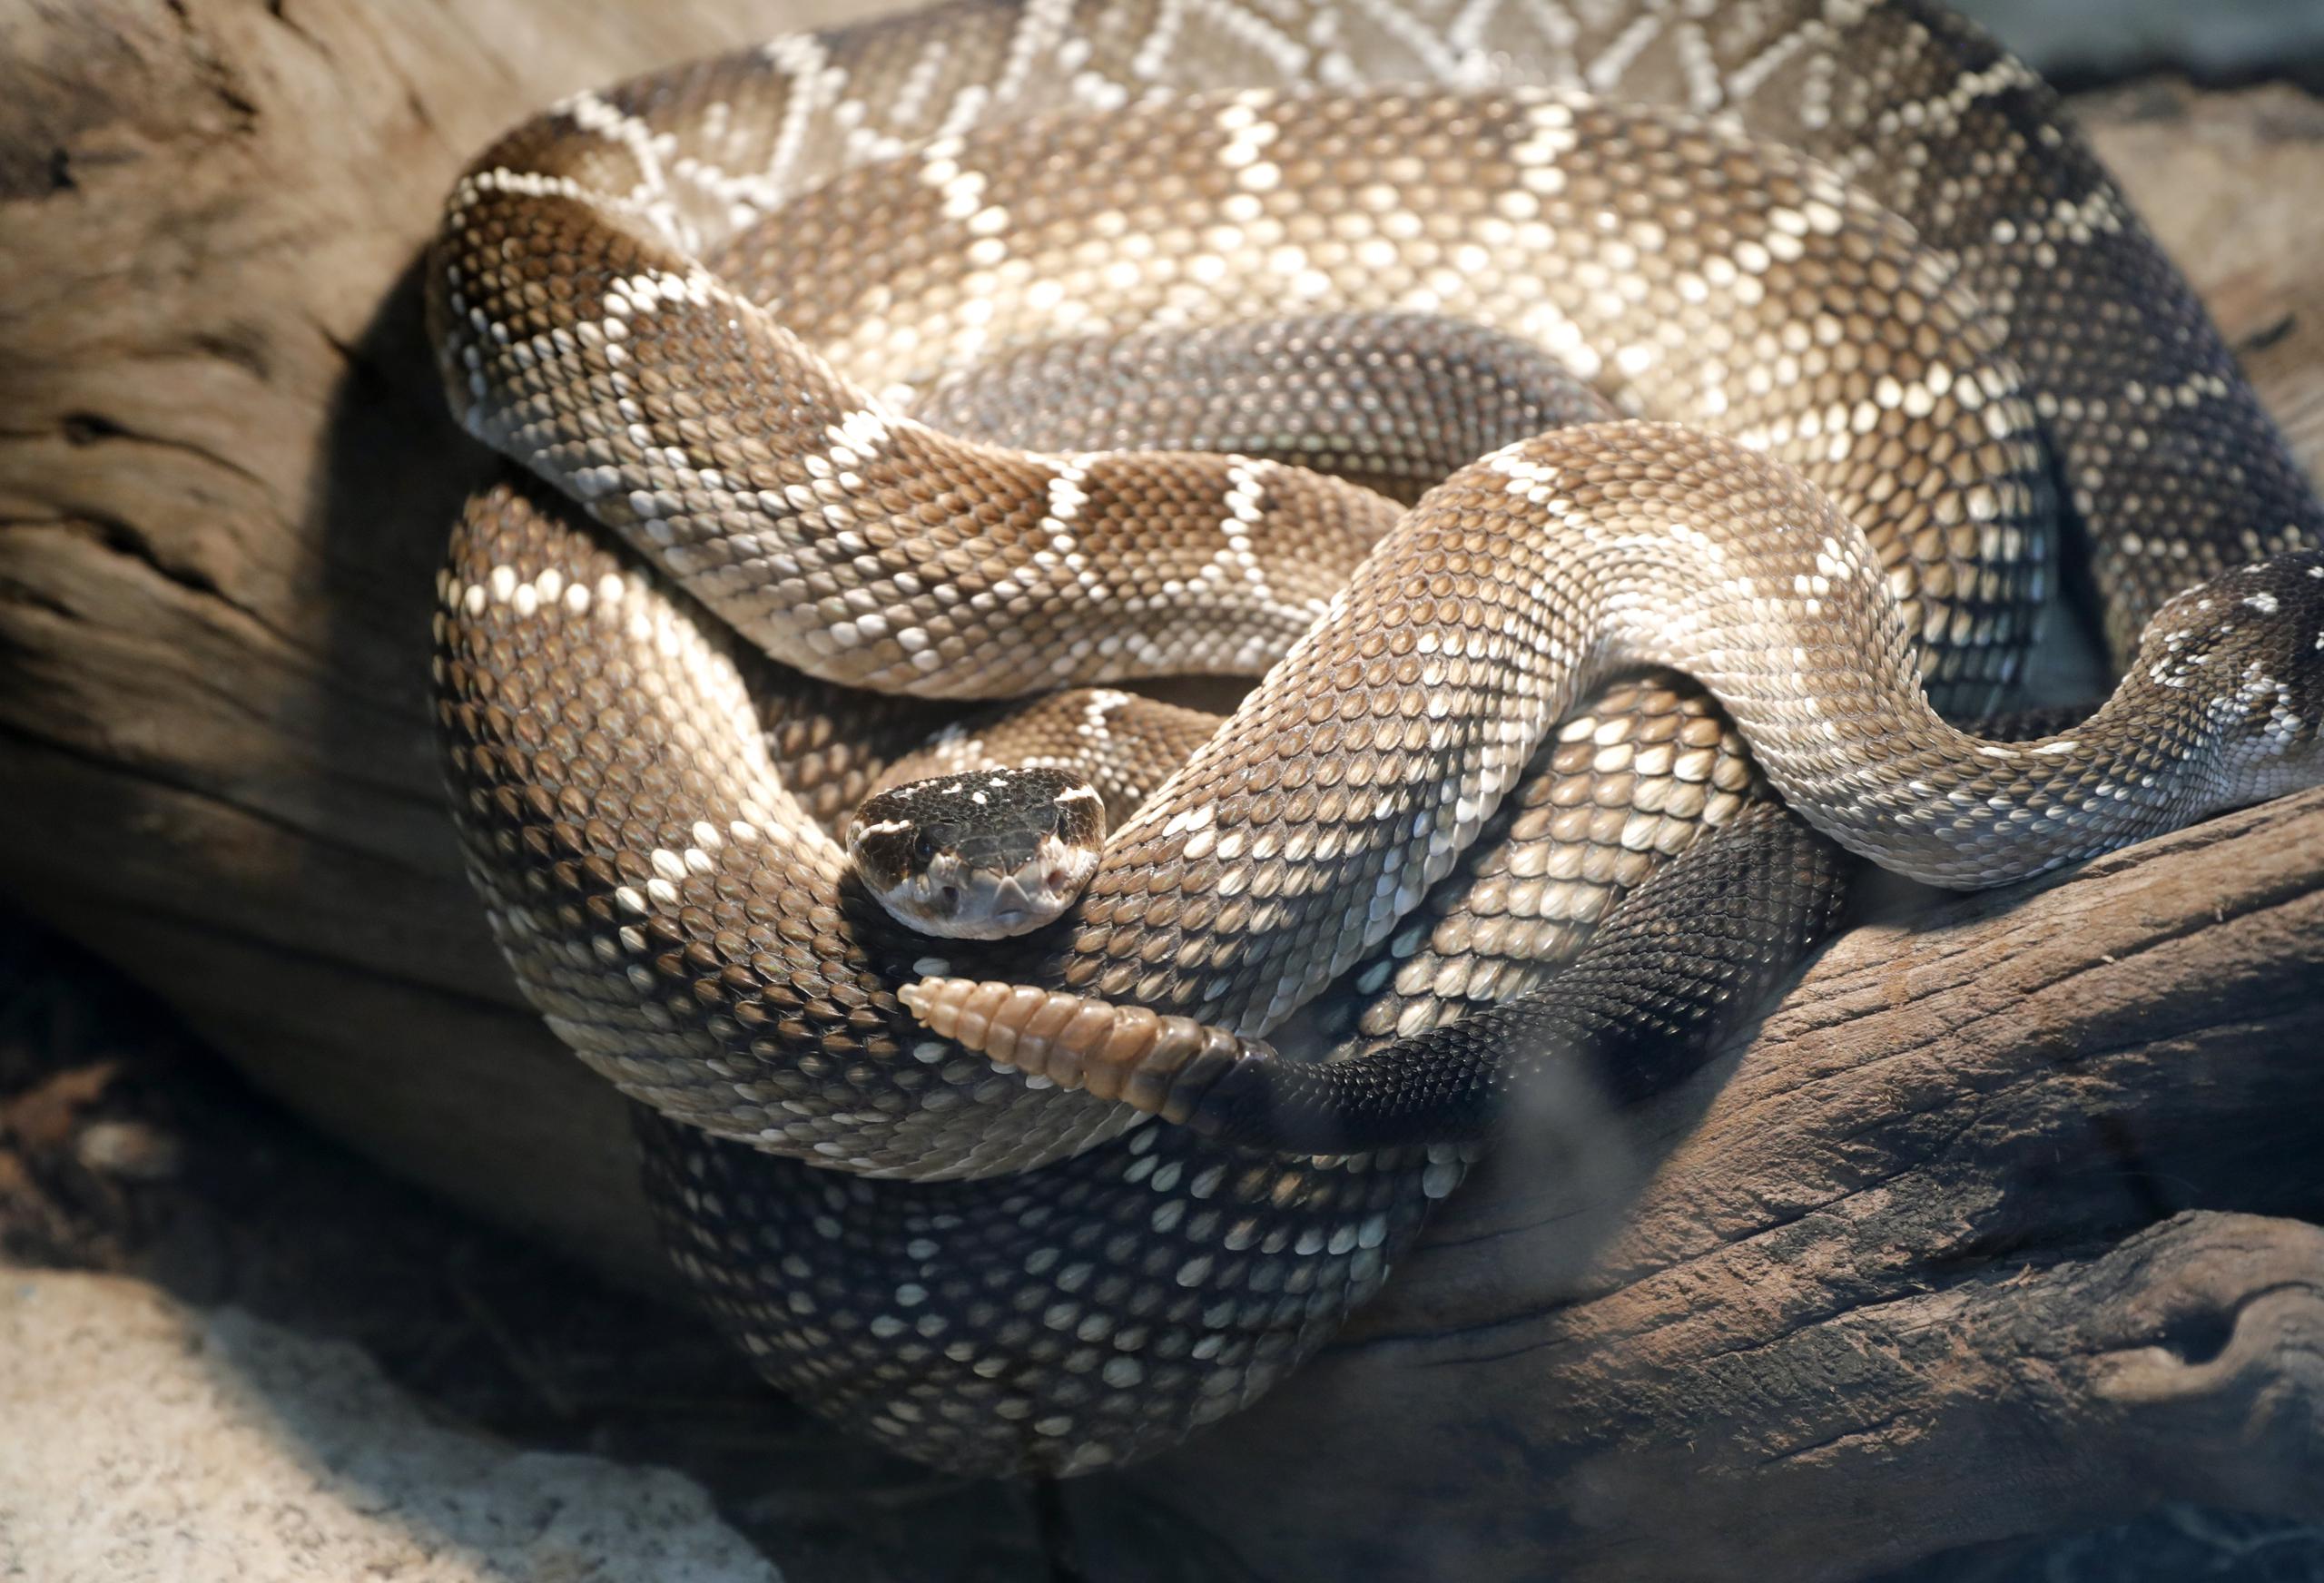 La serpiente de cascabel “eastern diamondback” es posiblemente la más peligrosa del sureste de Estados Unidos.